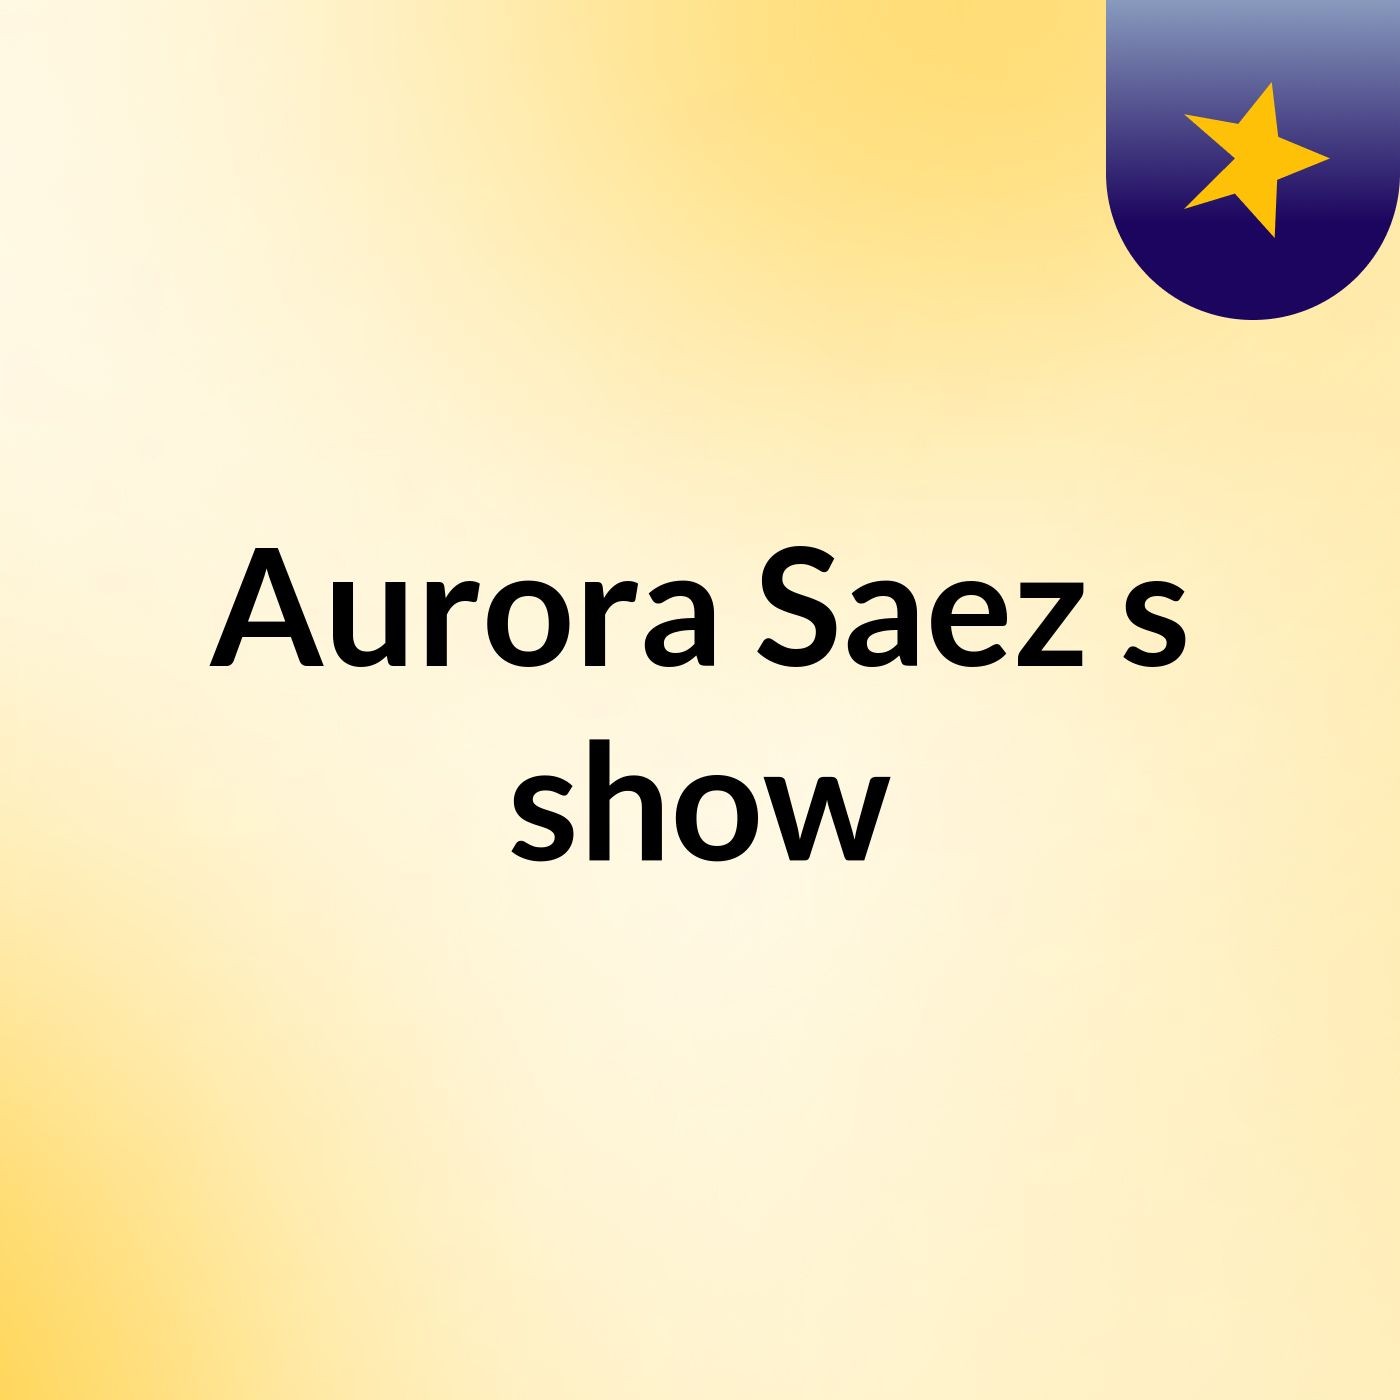 Aurora Saez's show